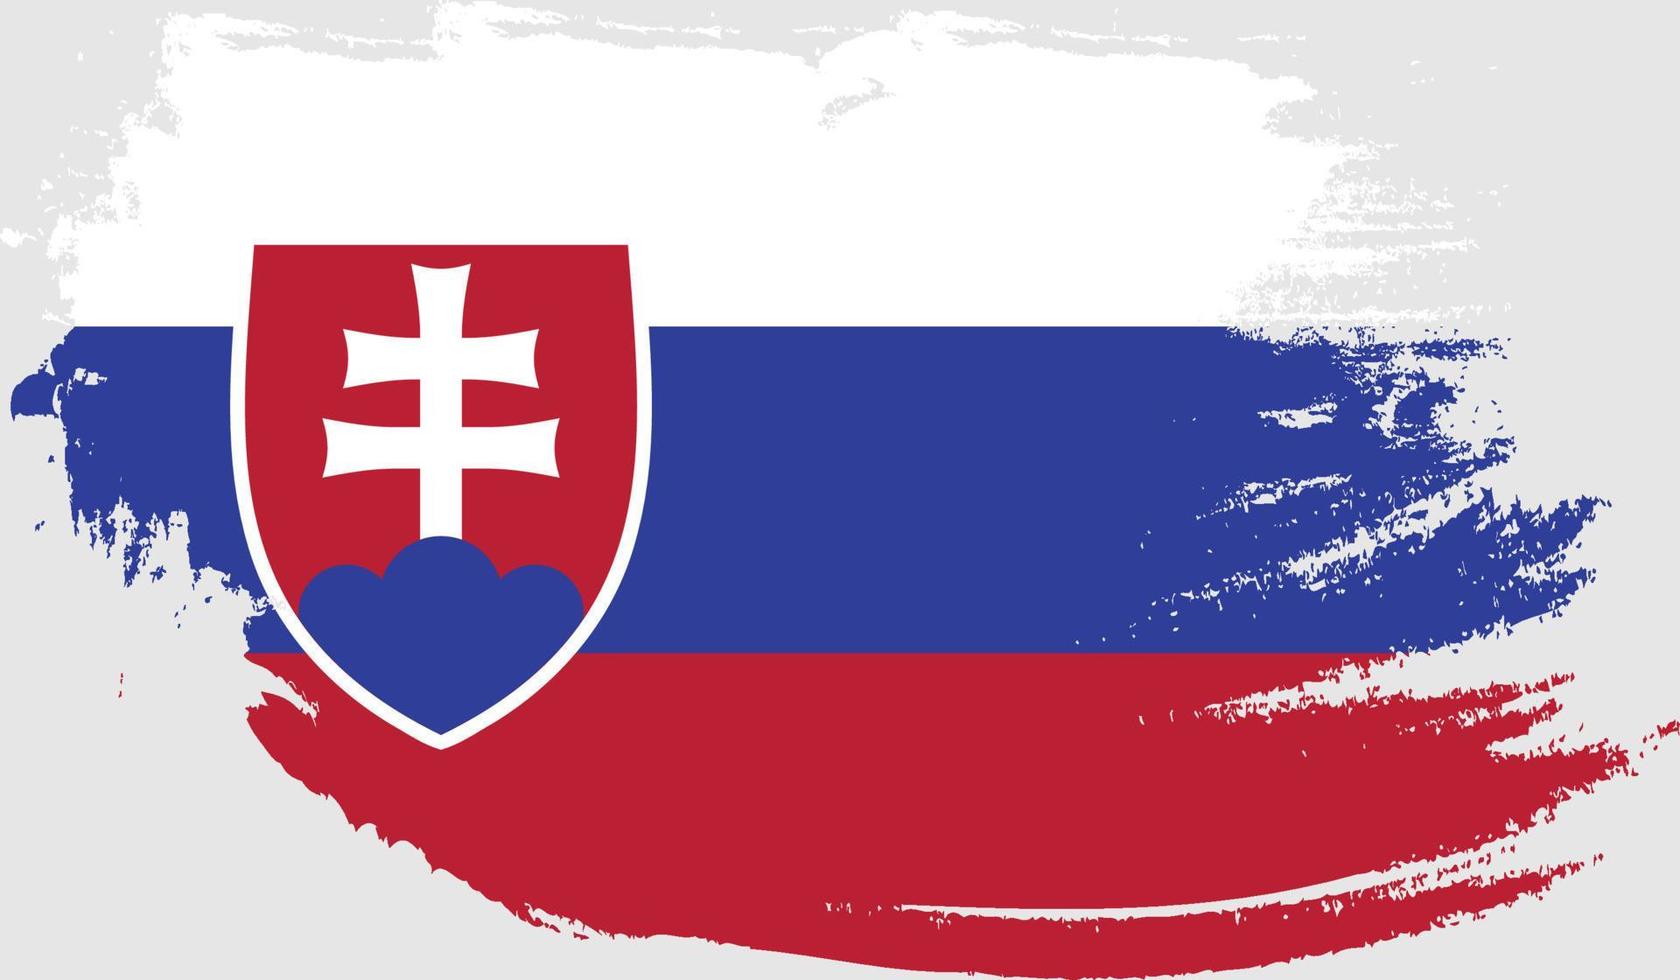 Slovakia flag with grunge texture vector